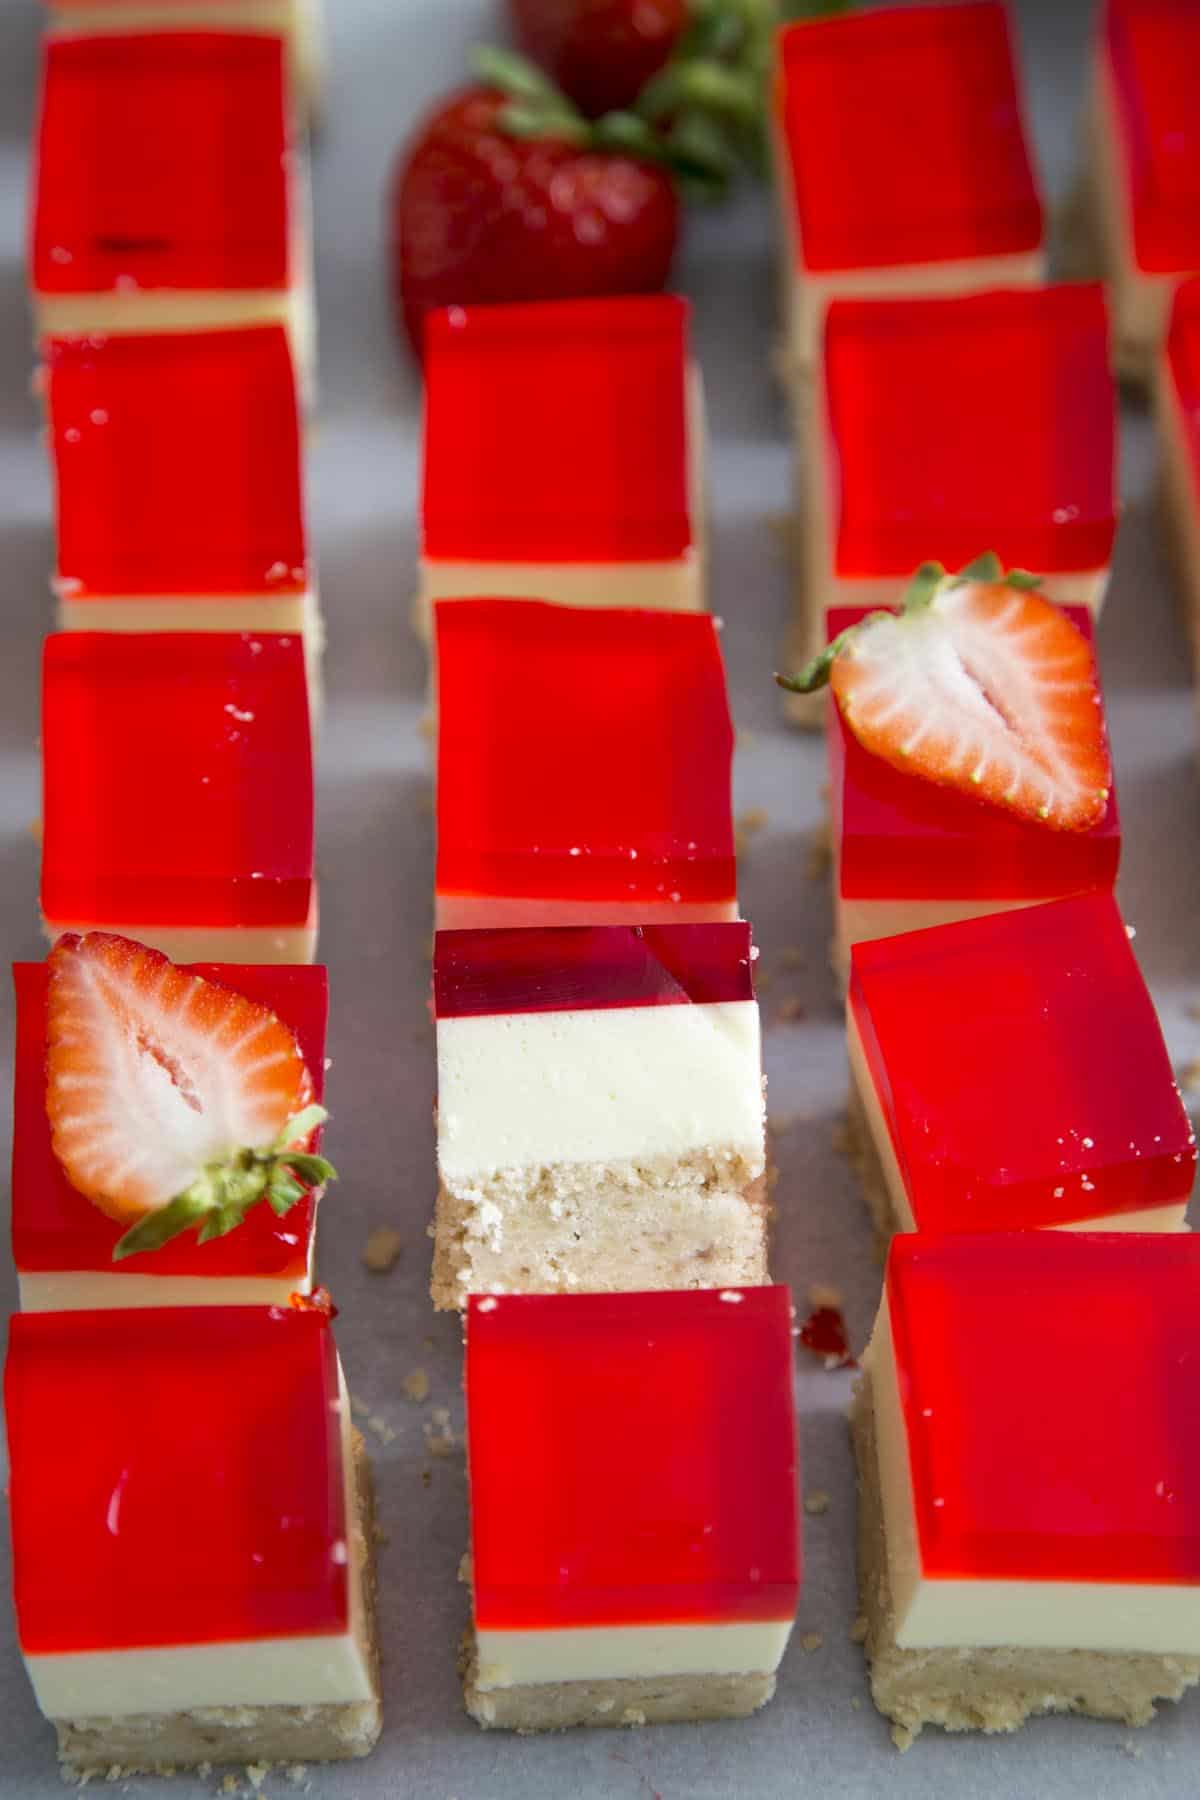 Strawberry Jello Dessert Bars cut into squares